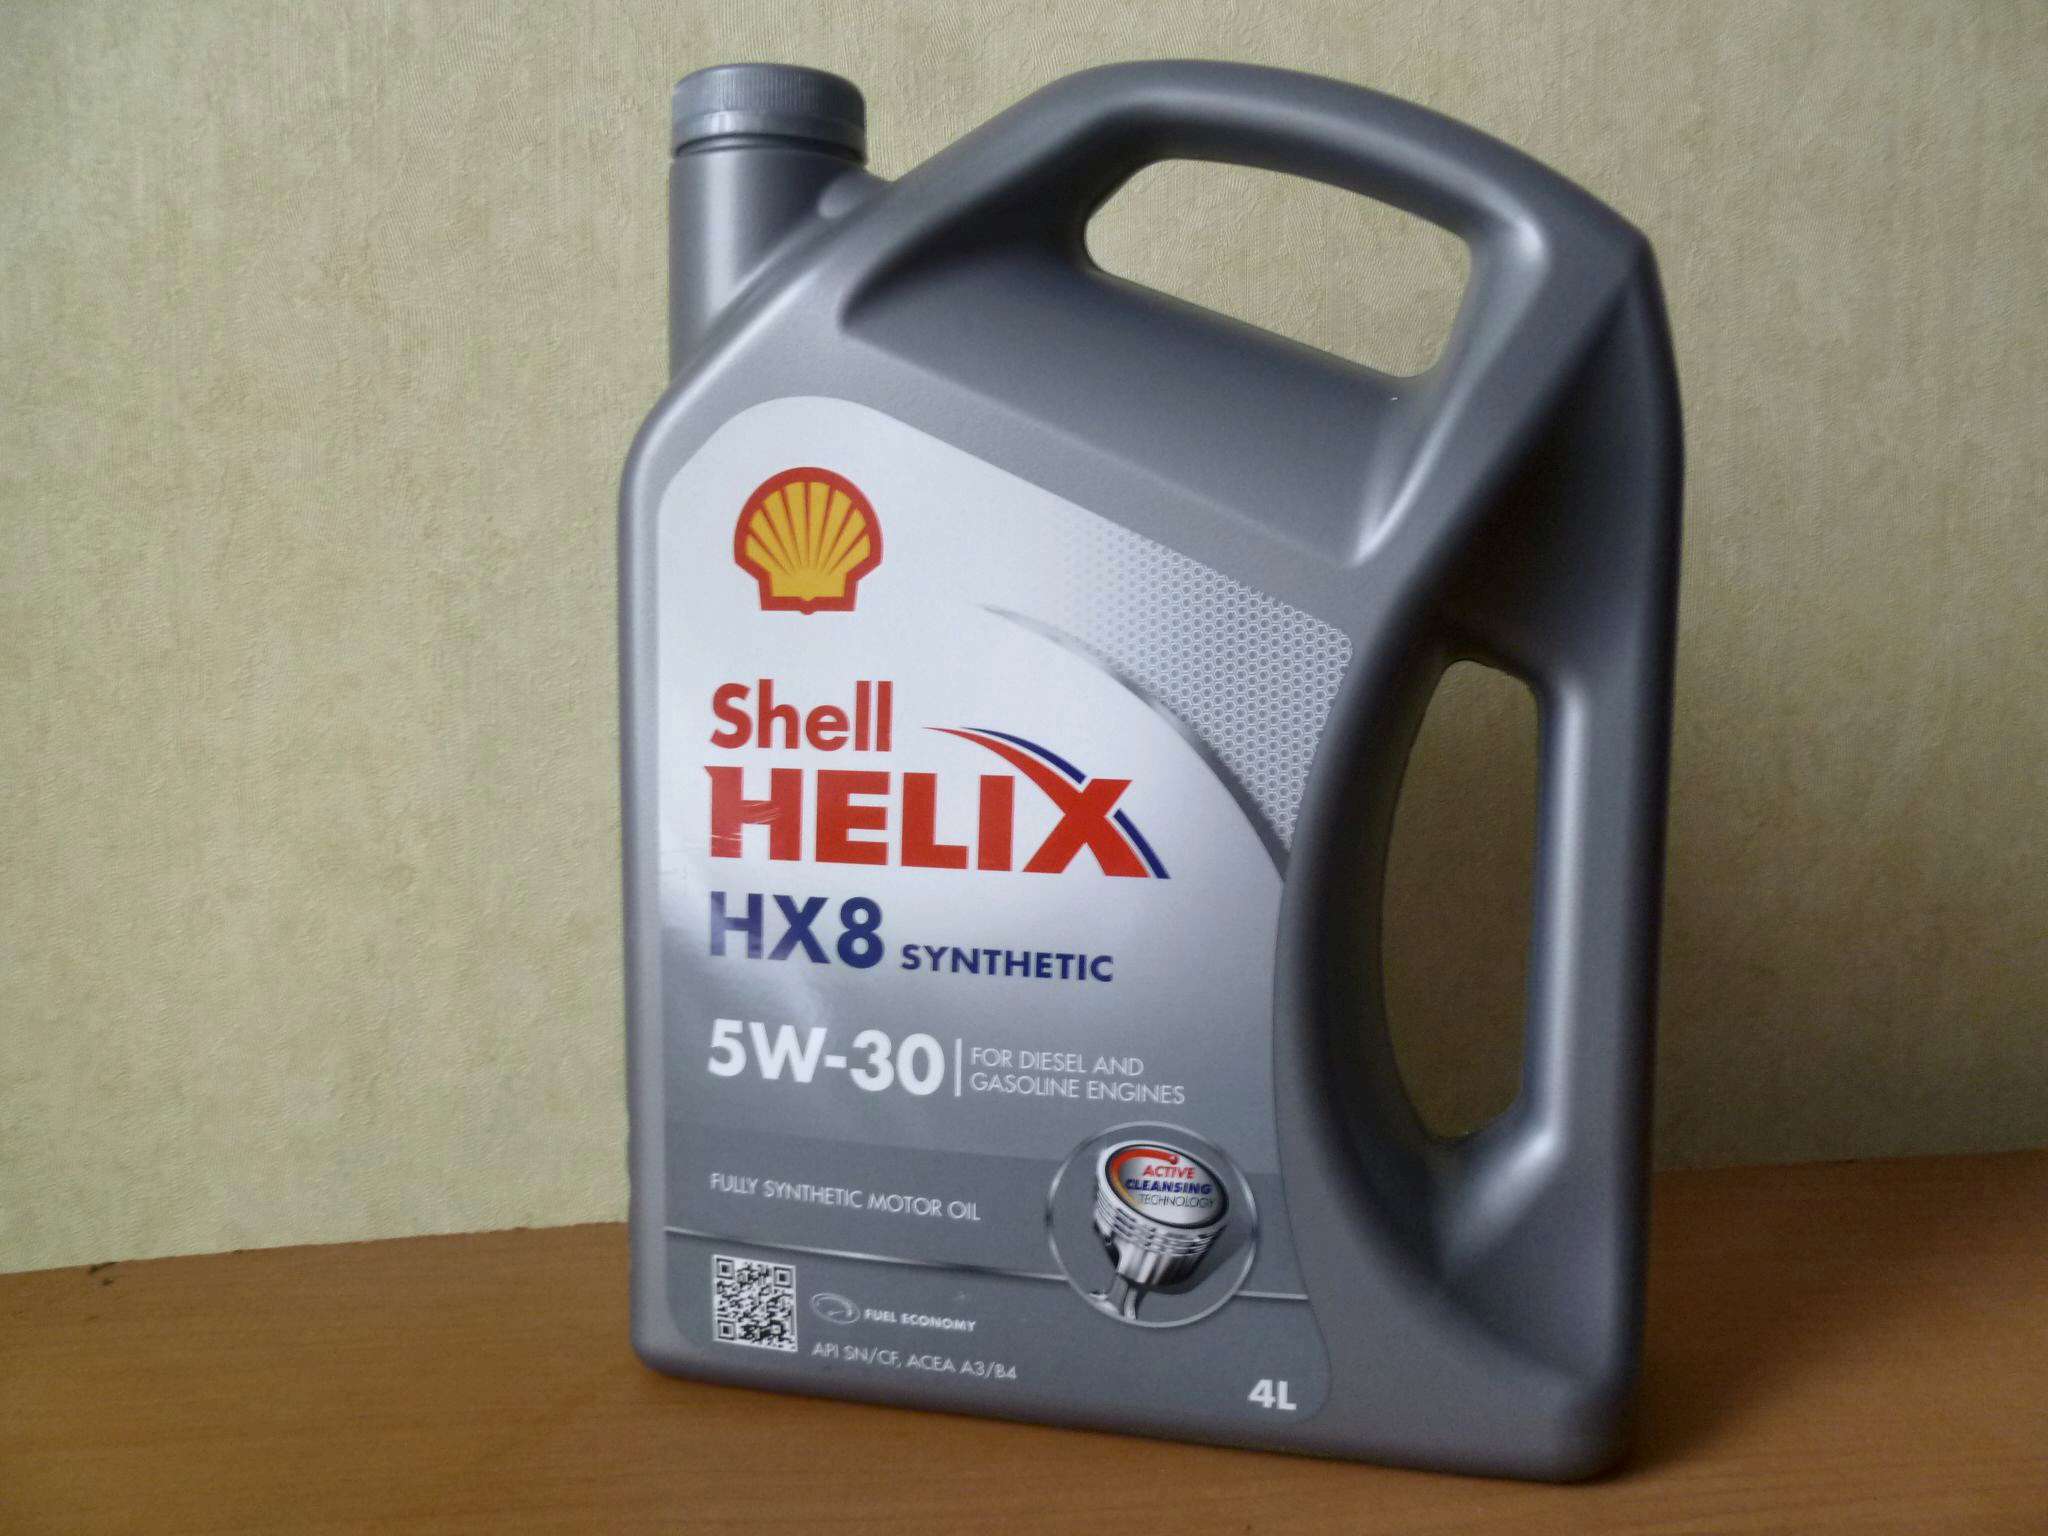 Shell hx8 5w30 купить. Shell hx8 5w30. Масло Shell hx8 5w30. Масло Шелл 5w30 hx8. 550040542 Shell Helix hx8 Synthetic 5w-30 4l.